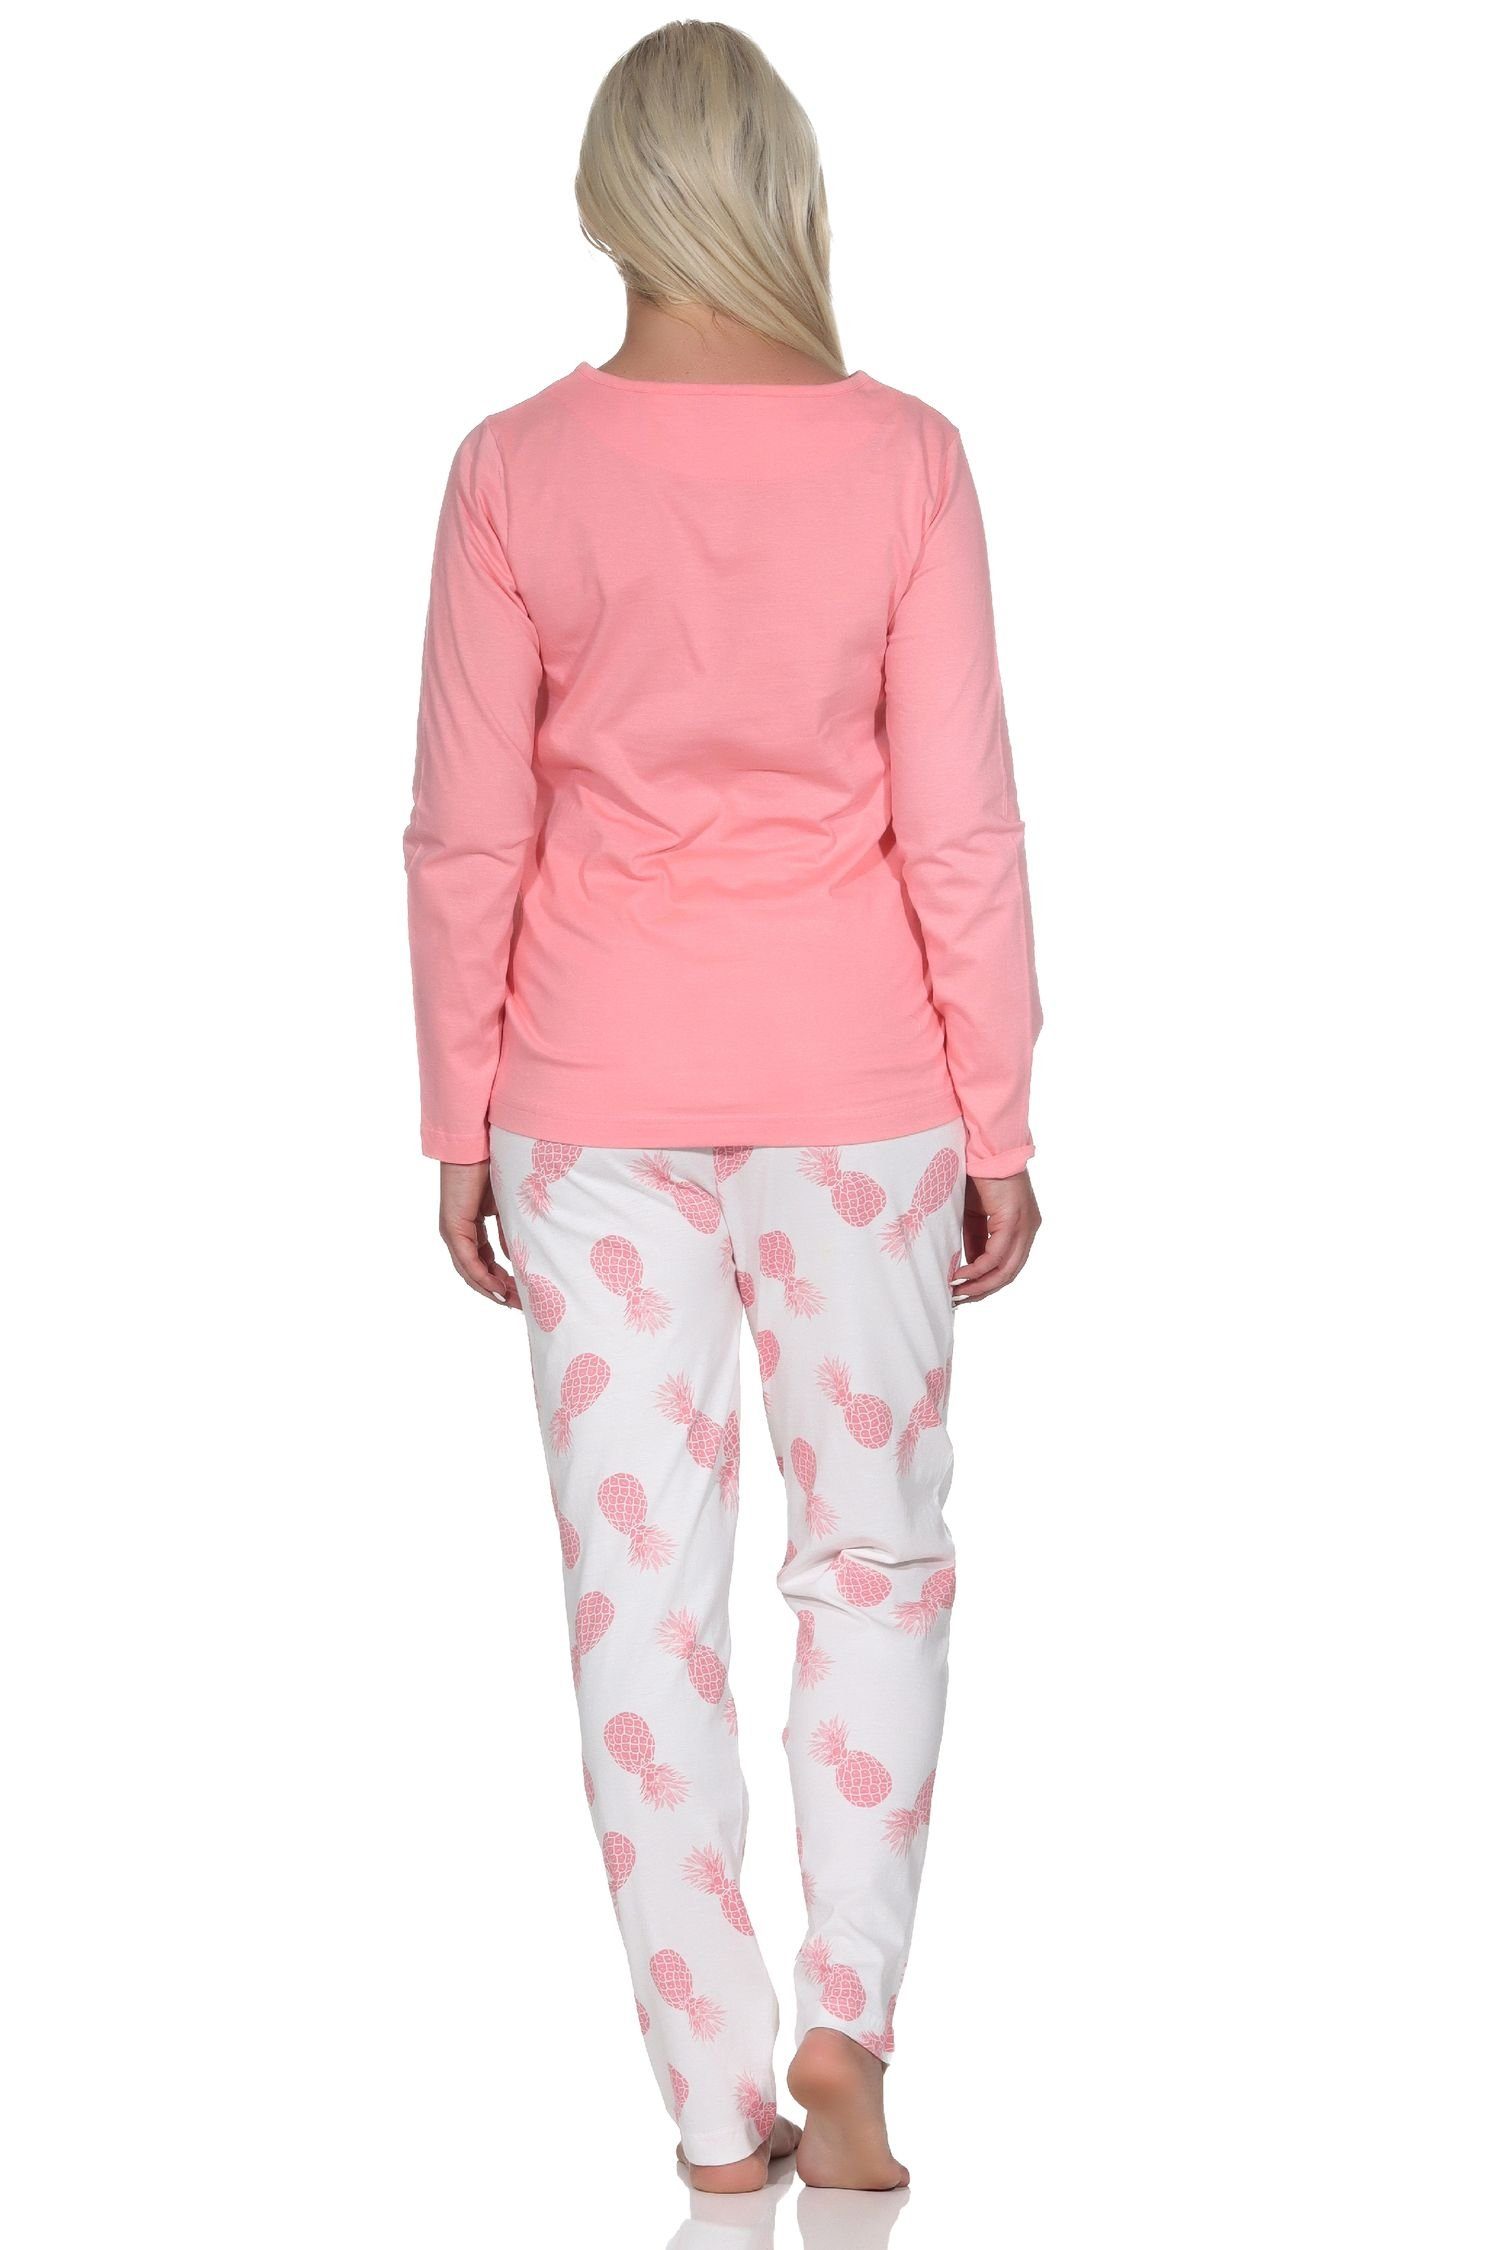 mit Langarm Ananas Normann Homewear Schlafanzug als Pyjama Damen Motiv rosa